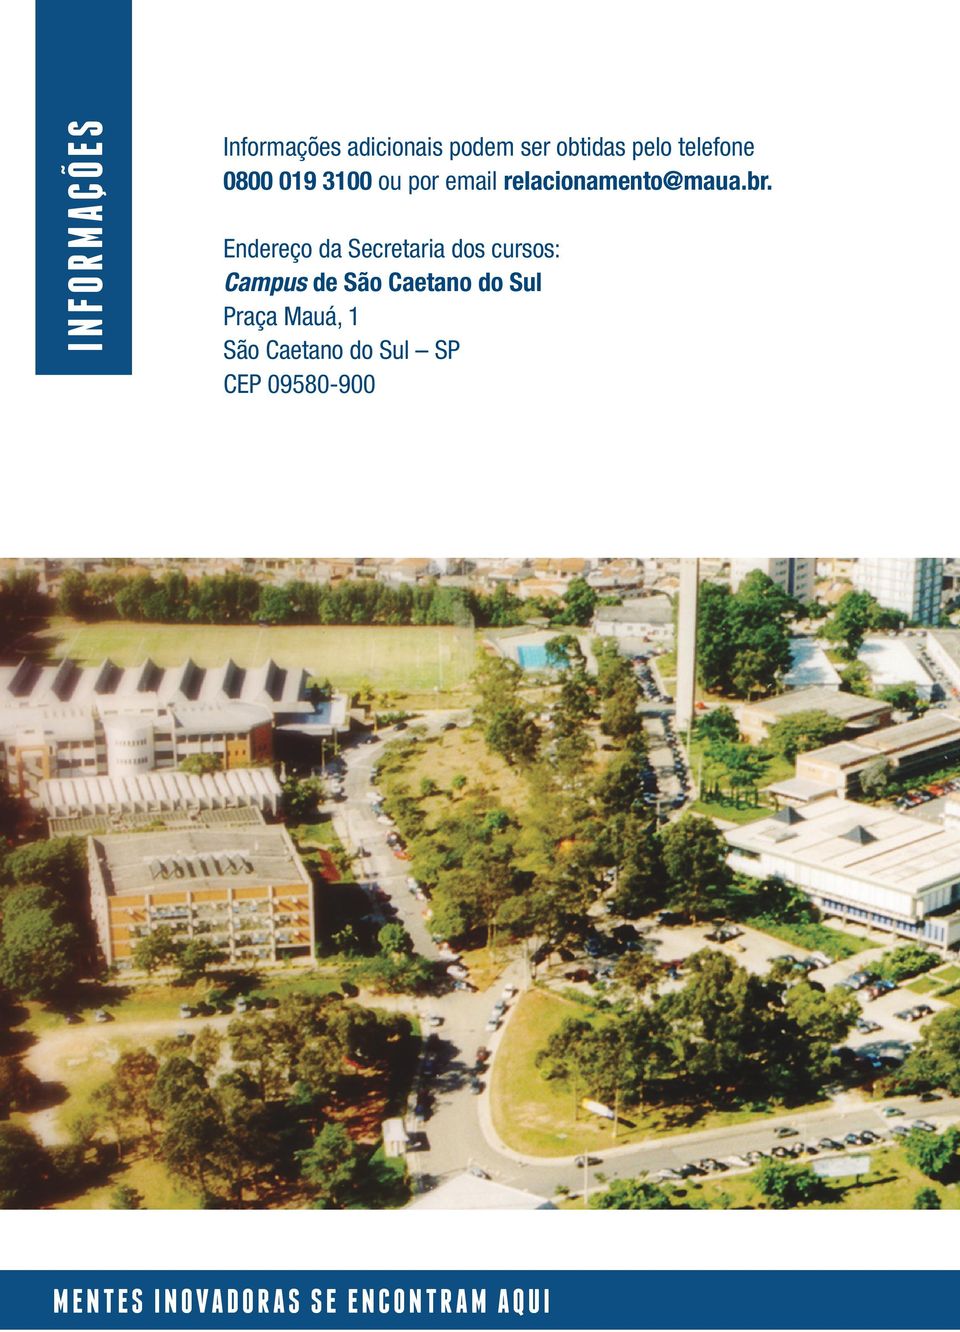 Endereço da Secretaria dos cursos: Campus de São Caetano do Sul